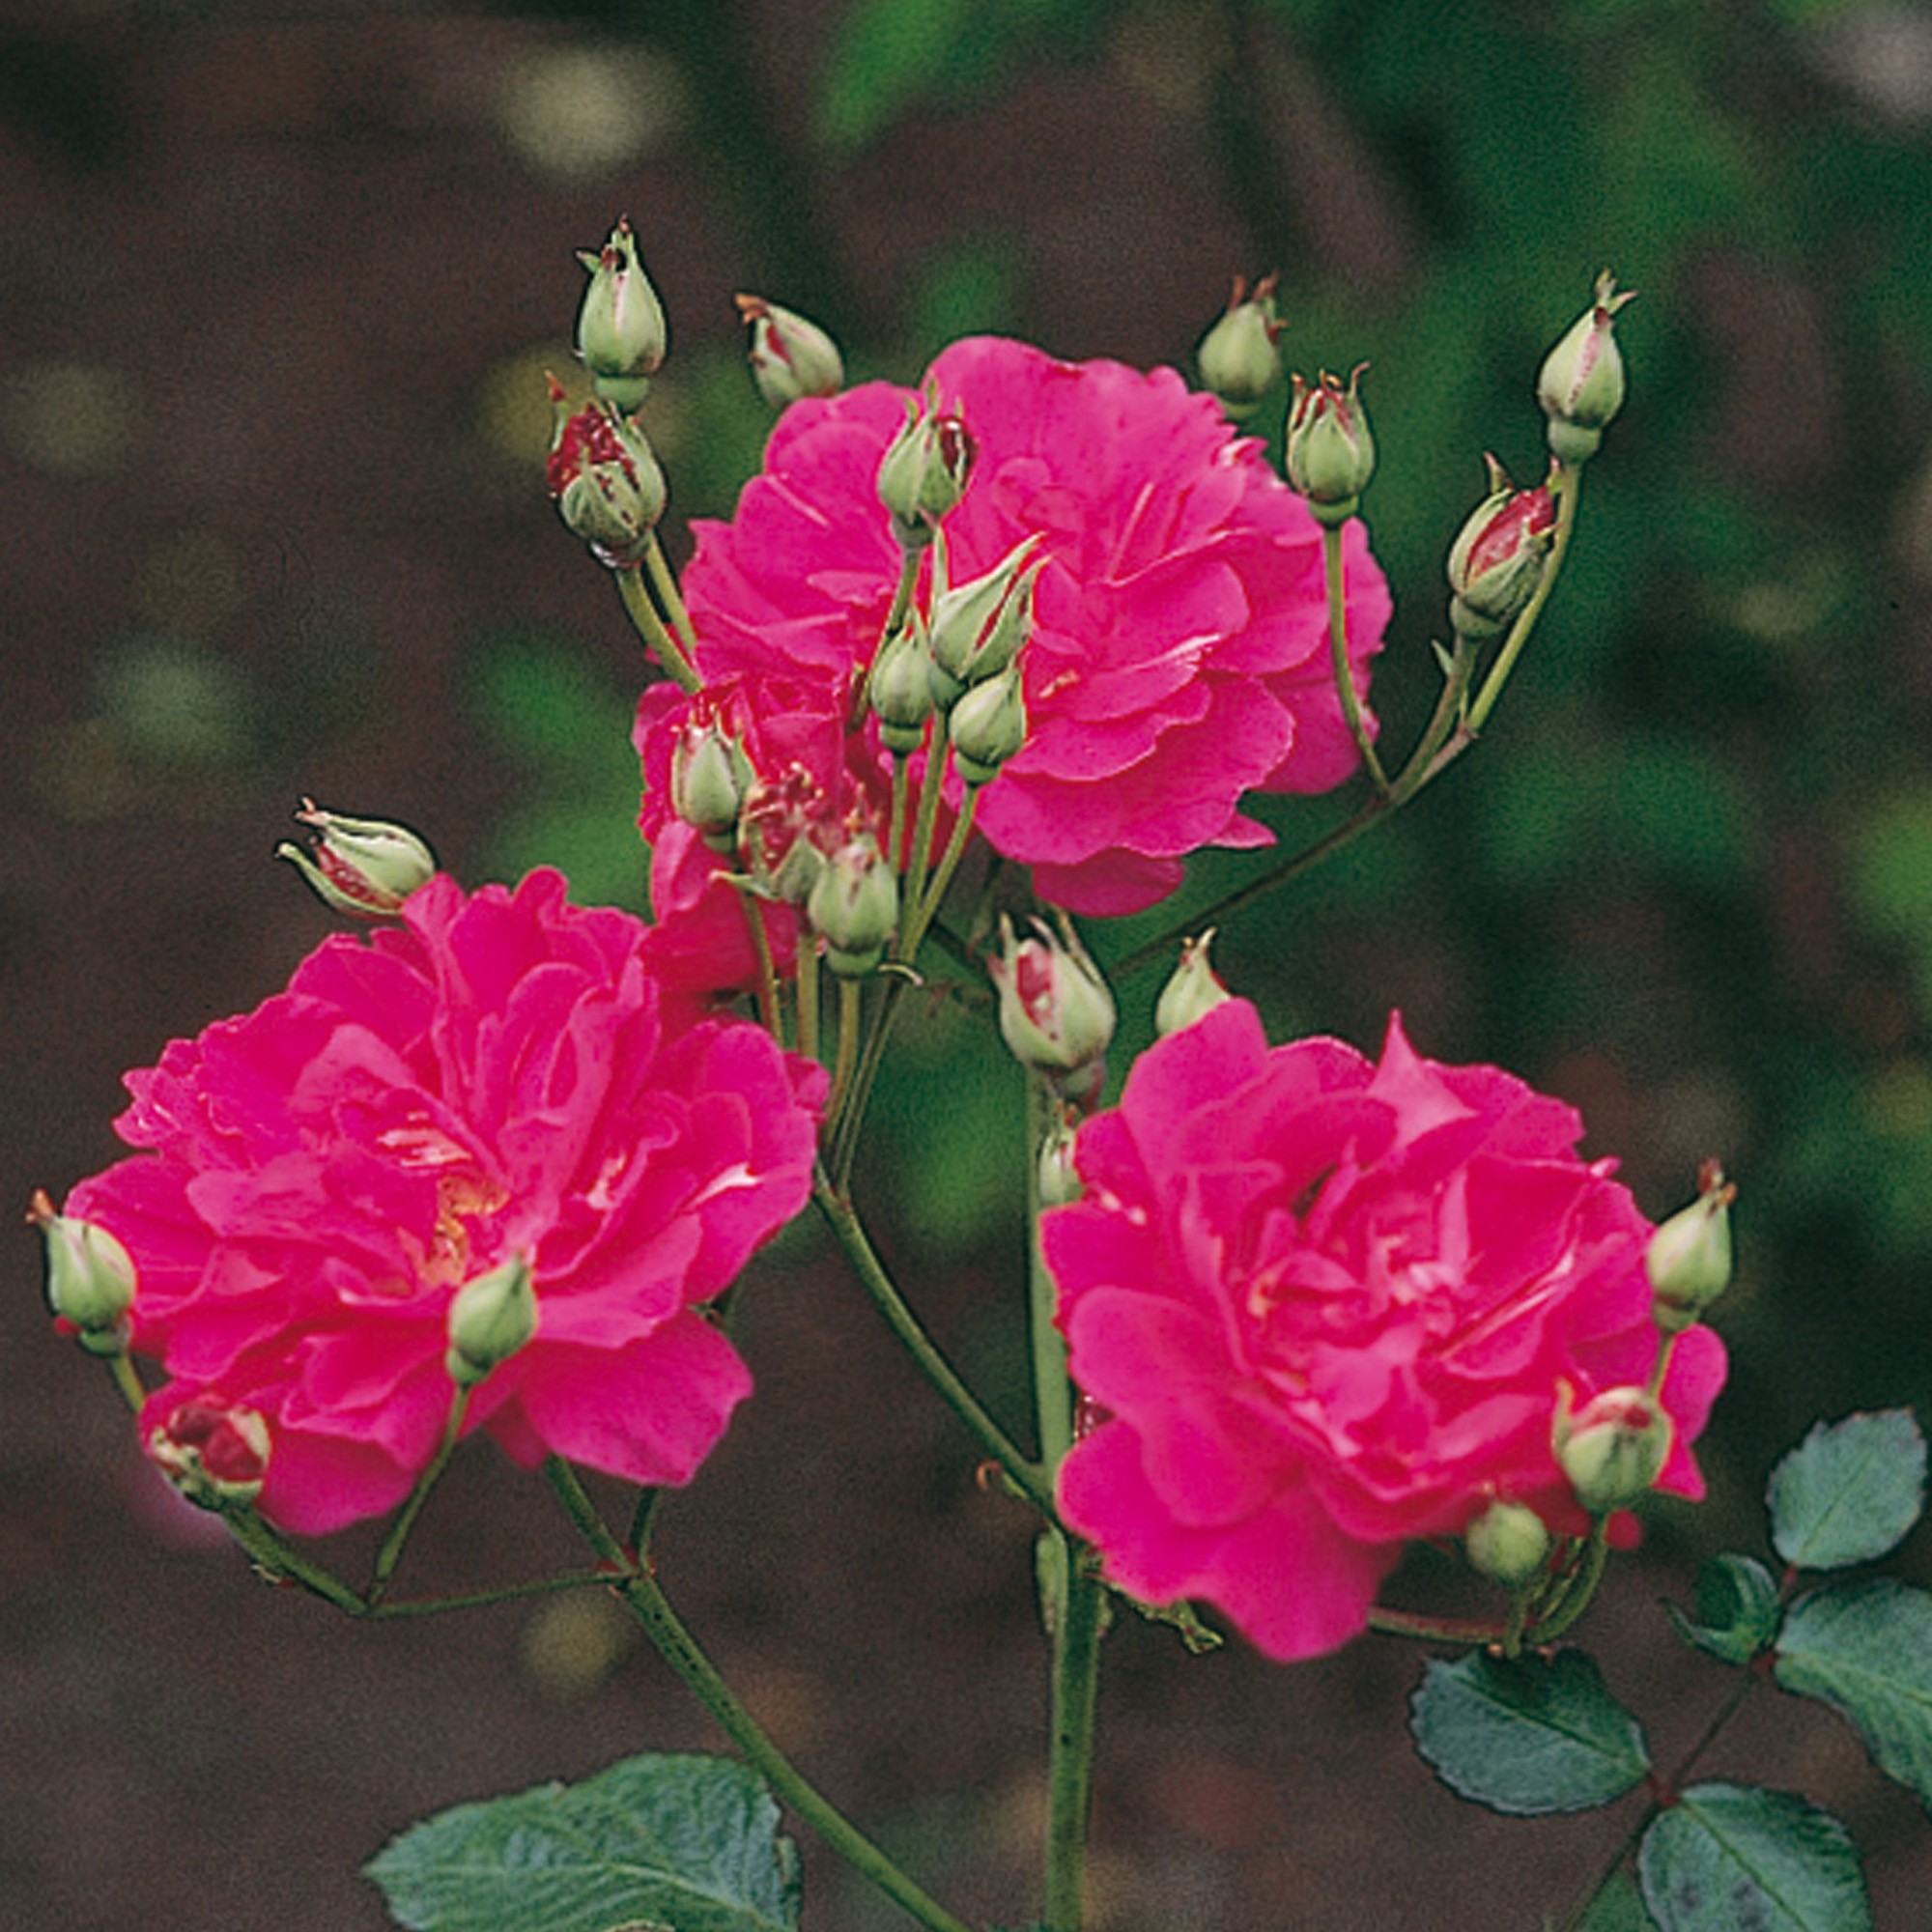 China Roses - David Austin Roses